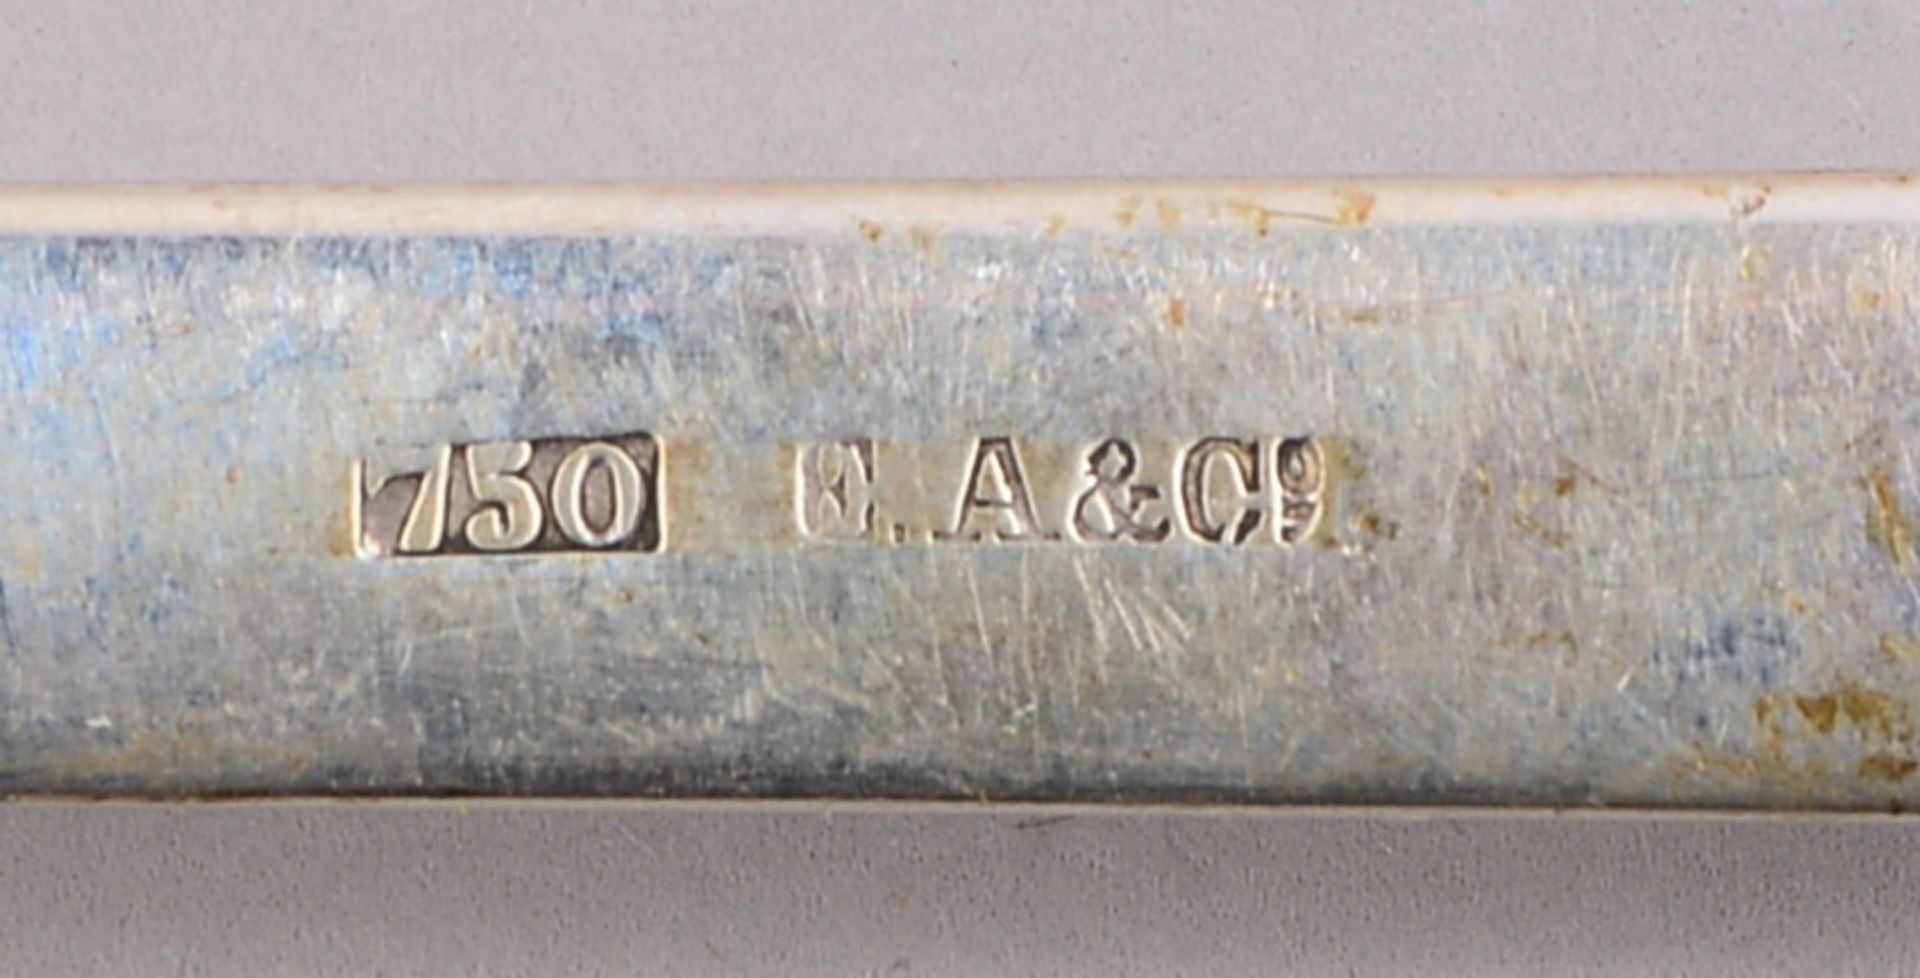 Silberteile, versch. Silbergehalte (Tablett, Kelle, Eierbecher, u.a.); Gew. zus. 508 g - Bild 2 aus 2